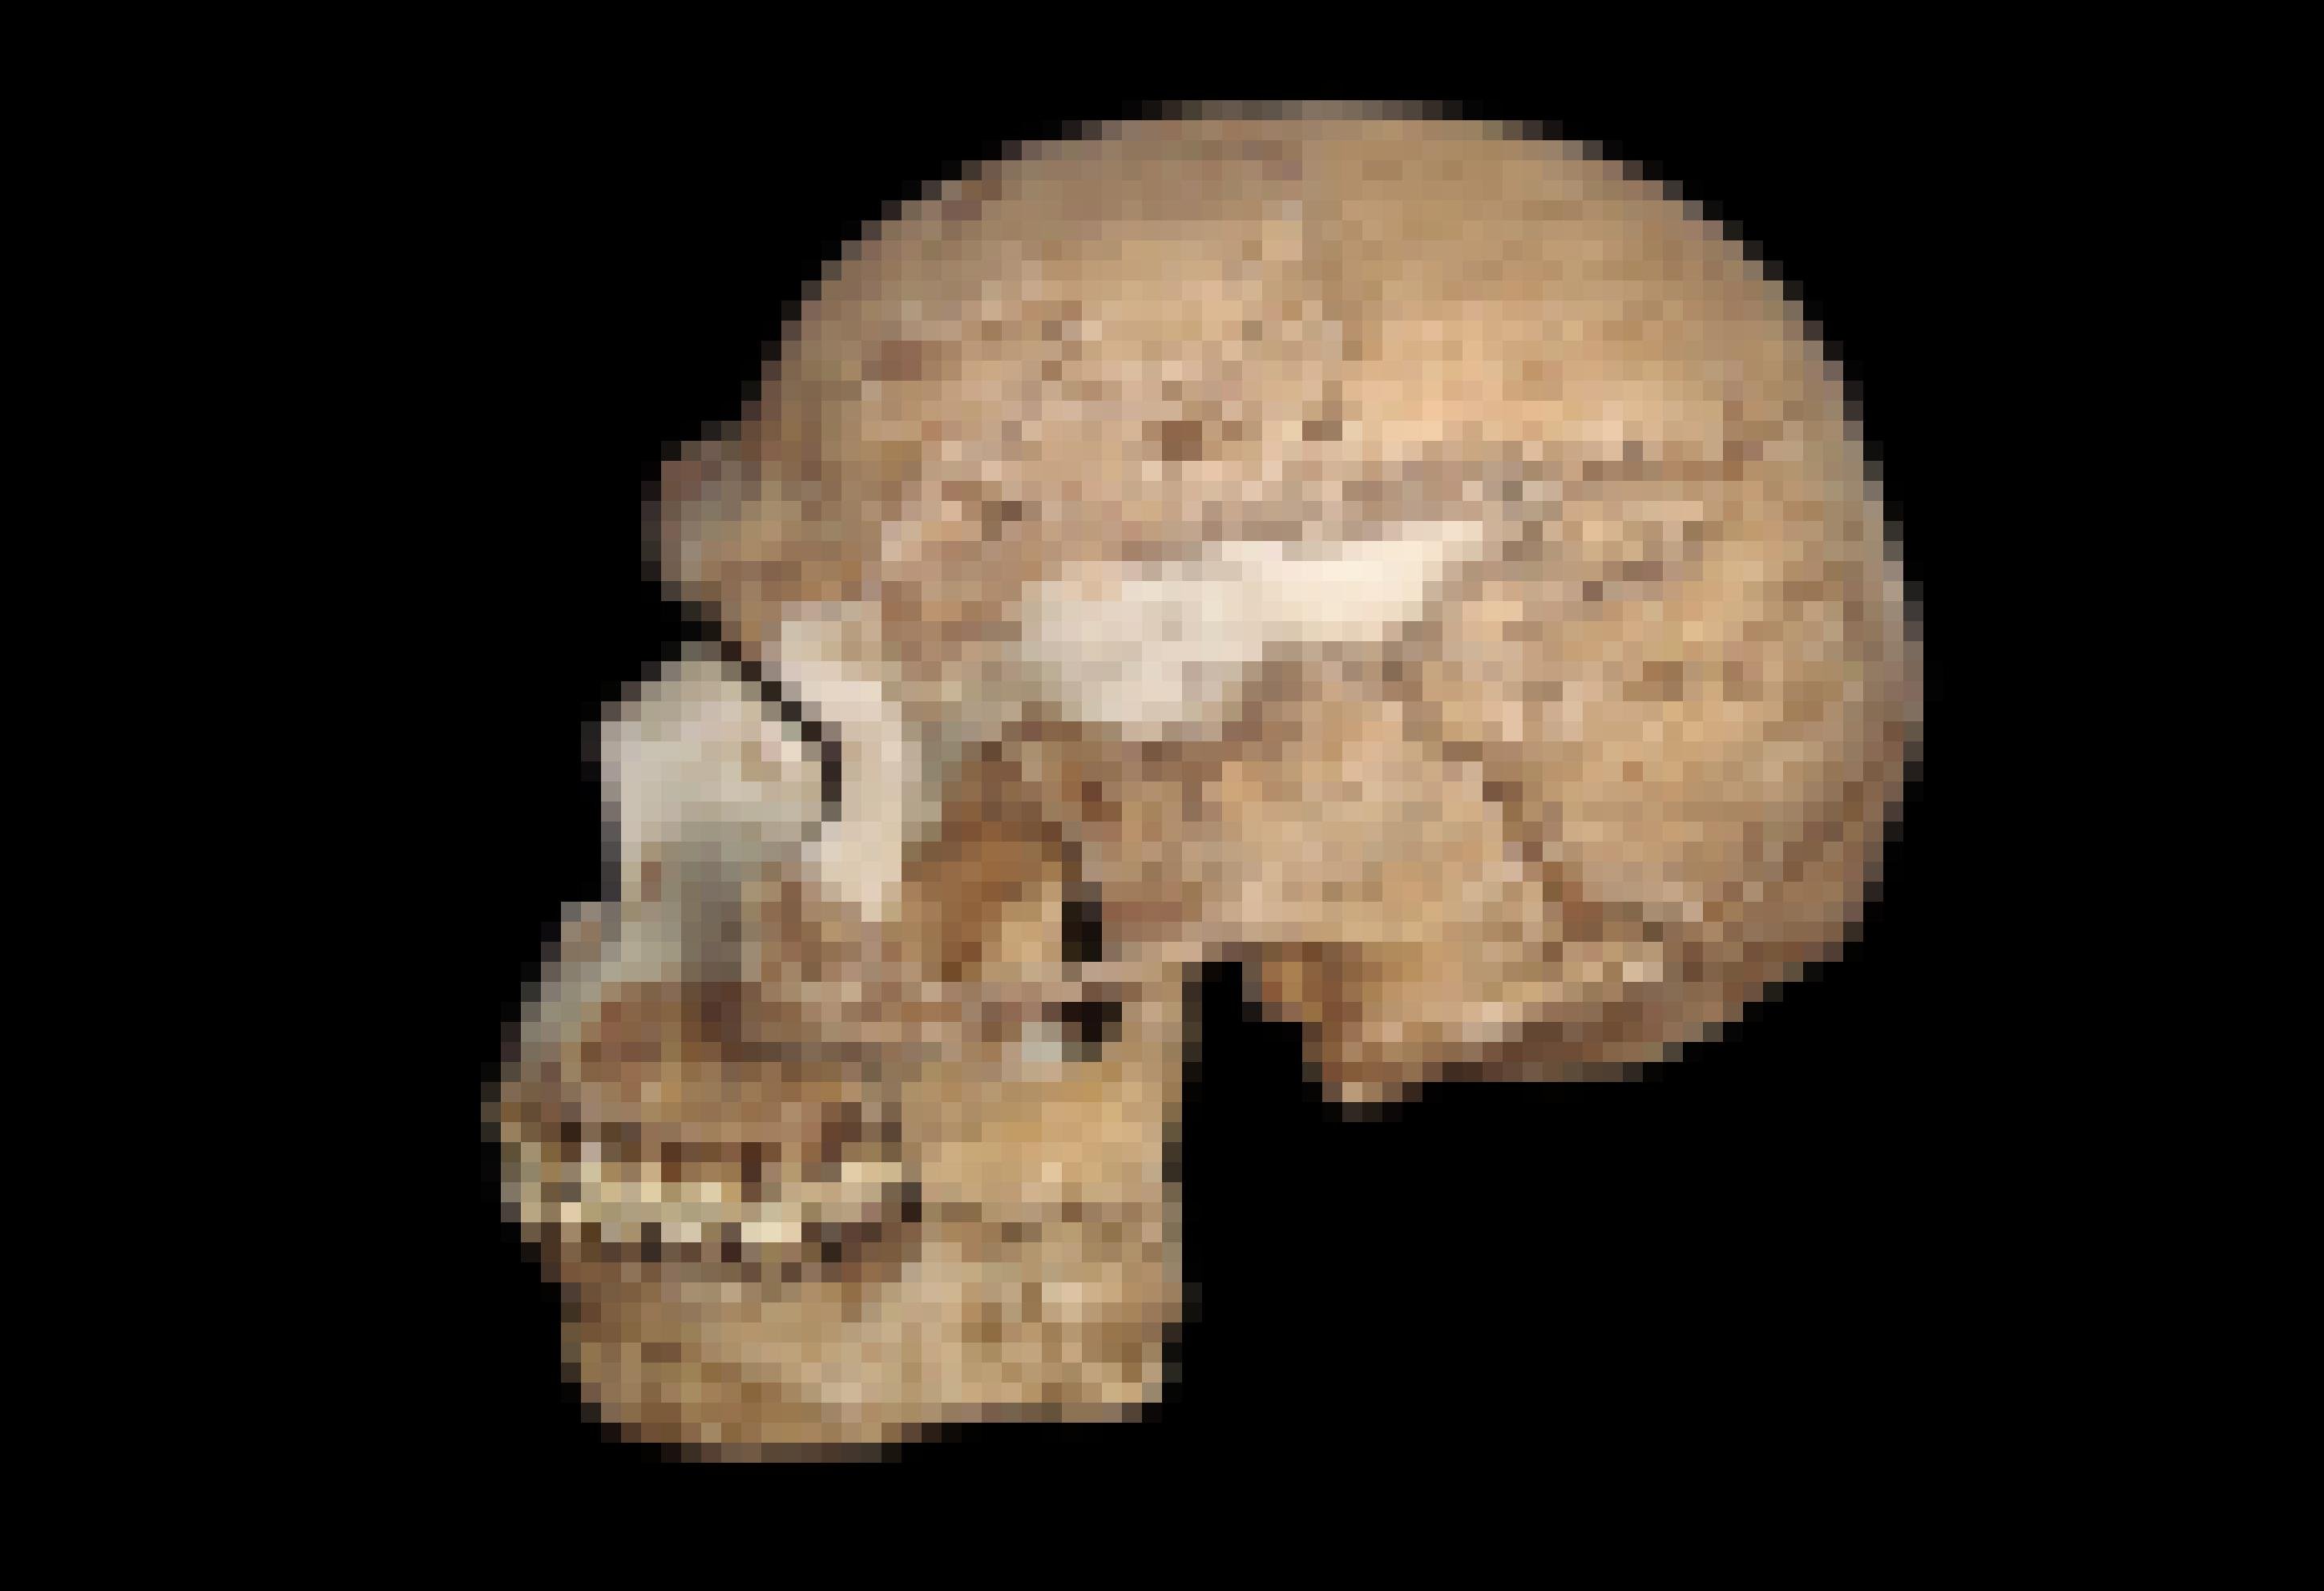 Auf dem Foto zu sehen ist der hellbraune, von der Seite aufgenommene Schädel eines Homo sapiens, der sehr gut erhalten ist und noch fast alle Zähne hat. Die Hirnkapsel ist rund, das Kinn ausgeprägt, die Bögen über den Augen sind deutlich weniger stark als etwa beim Neandertaler – kurzum, er ähnelt heutigen Menschen schon weitgehend. Das Fossil wurde bereits vor vielen Jahren in Skhul, einer Höhle im heutigen Israel, entdeckt und wird auf rund 90.000 Jahre datiert. Dieser Mensch und seine Angehörigen waren offenbar bereits aus Afrika ausgewandert. Anatomisch dürften sie jenen Menschen ähneln, die als erste auch den europäischen Kontinent besiedelten. Wie jetzt eine Grabung in Rumänien ergab, erreichte der Homo sapiens Europa bereits vor mindestens 45.000 Jahren – viel früher als bislang gedacht.